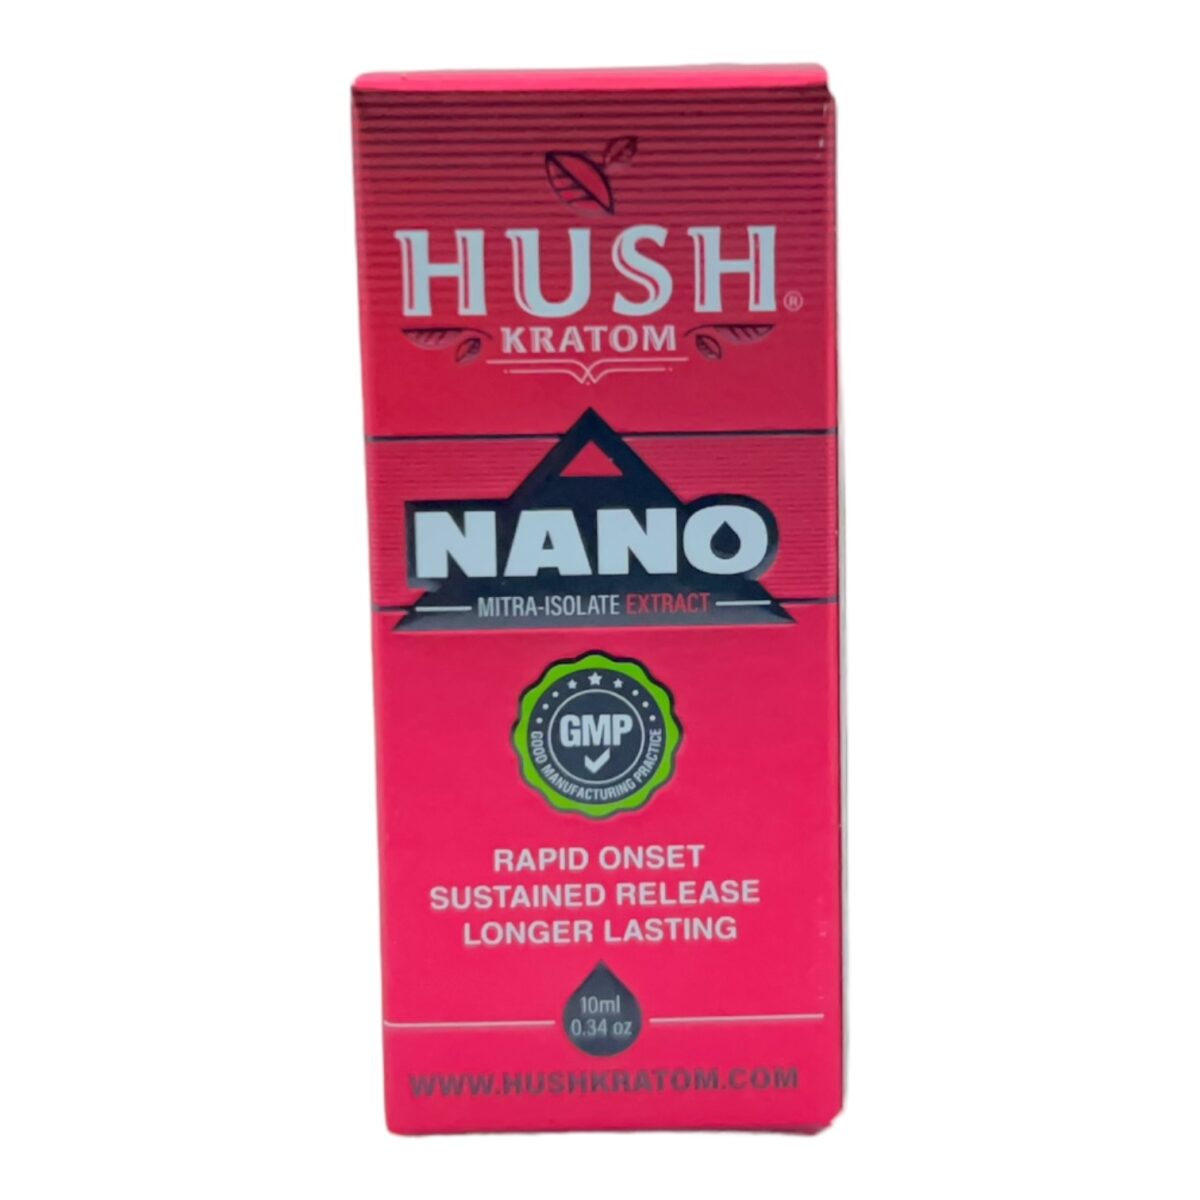 HUSH Nano Kratom Extract Shot – 10ml